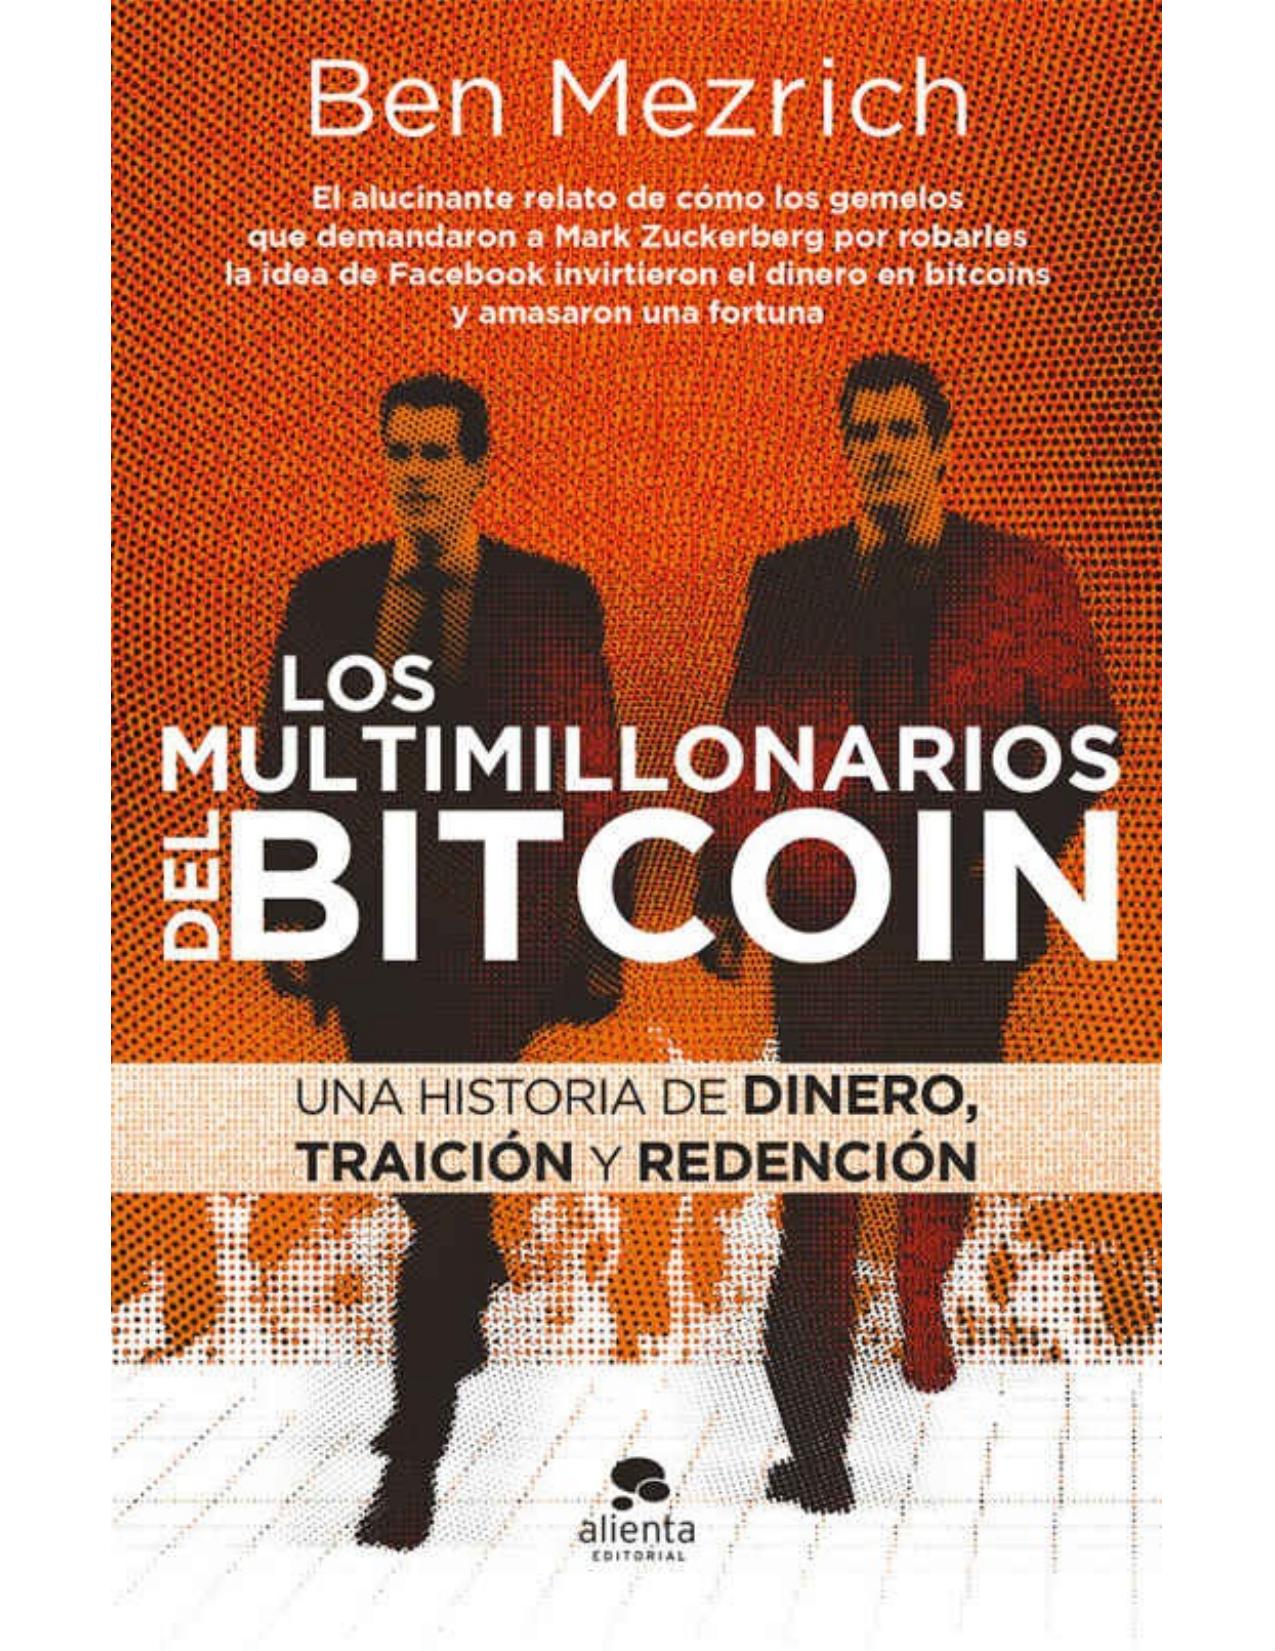 Los multimillonarios del bitcoin (Spanish Edition)